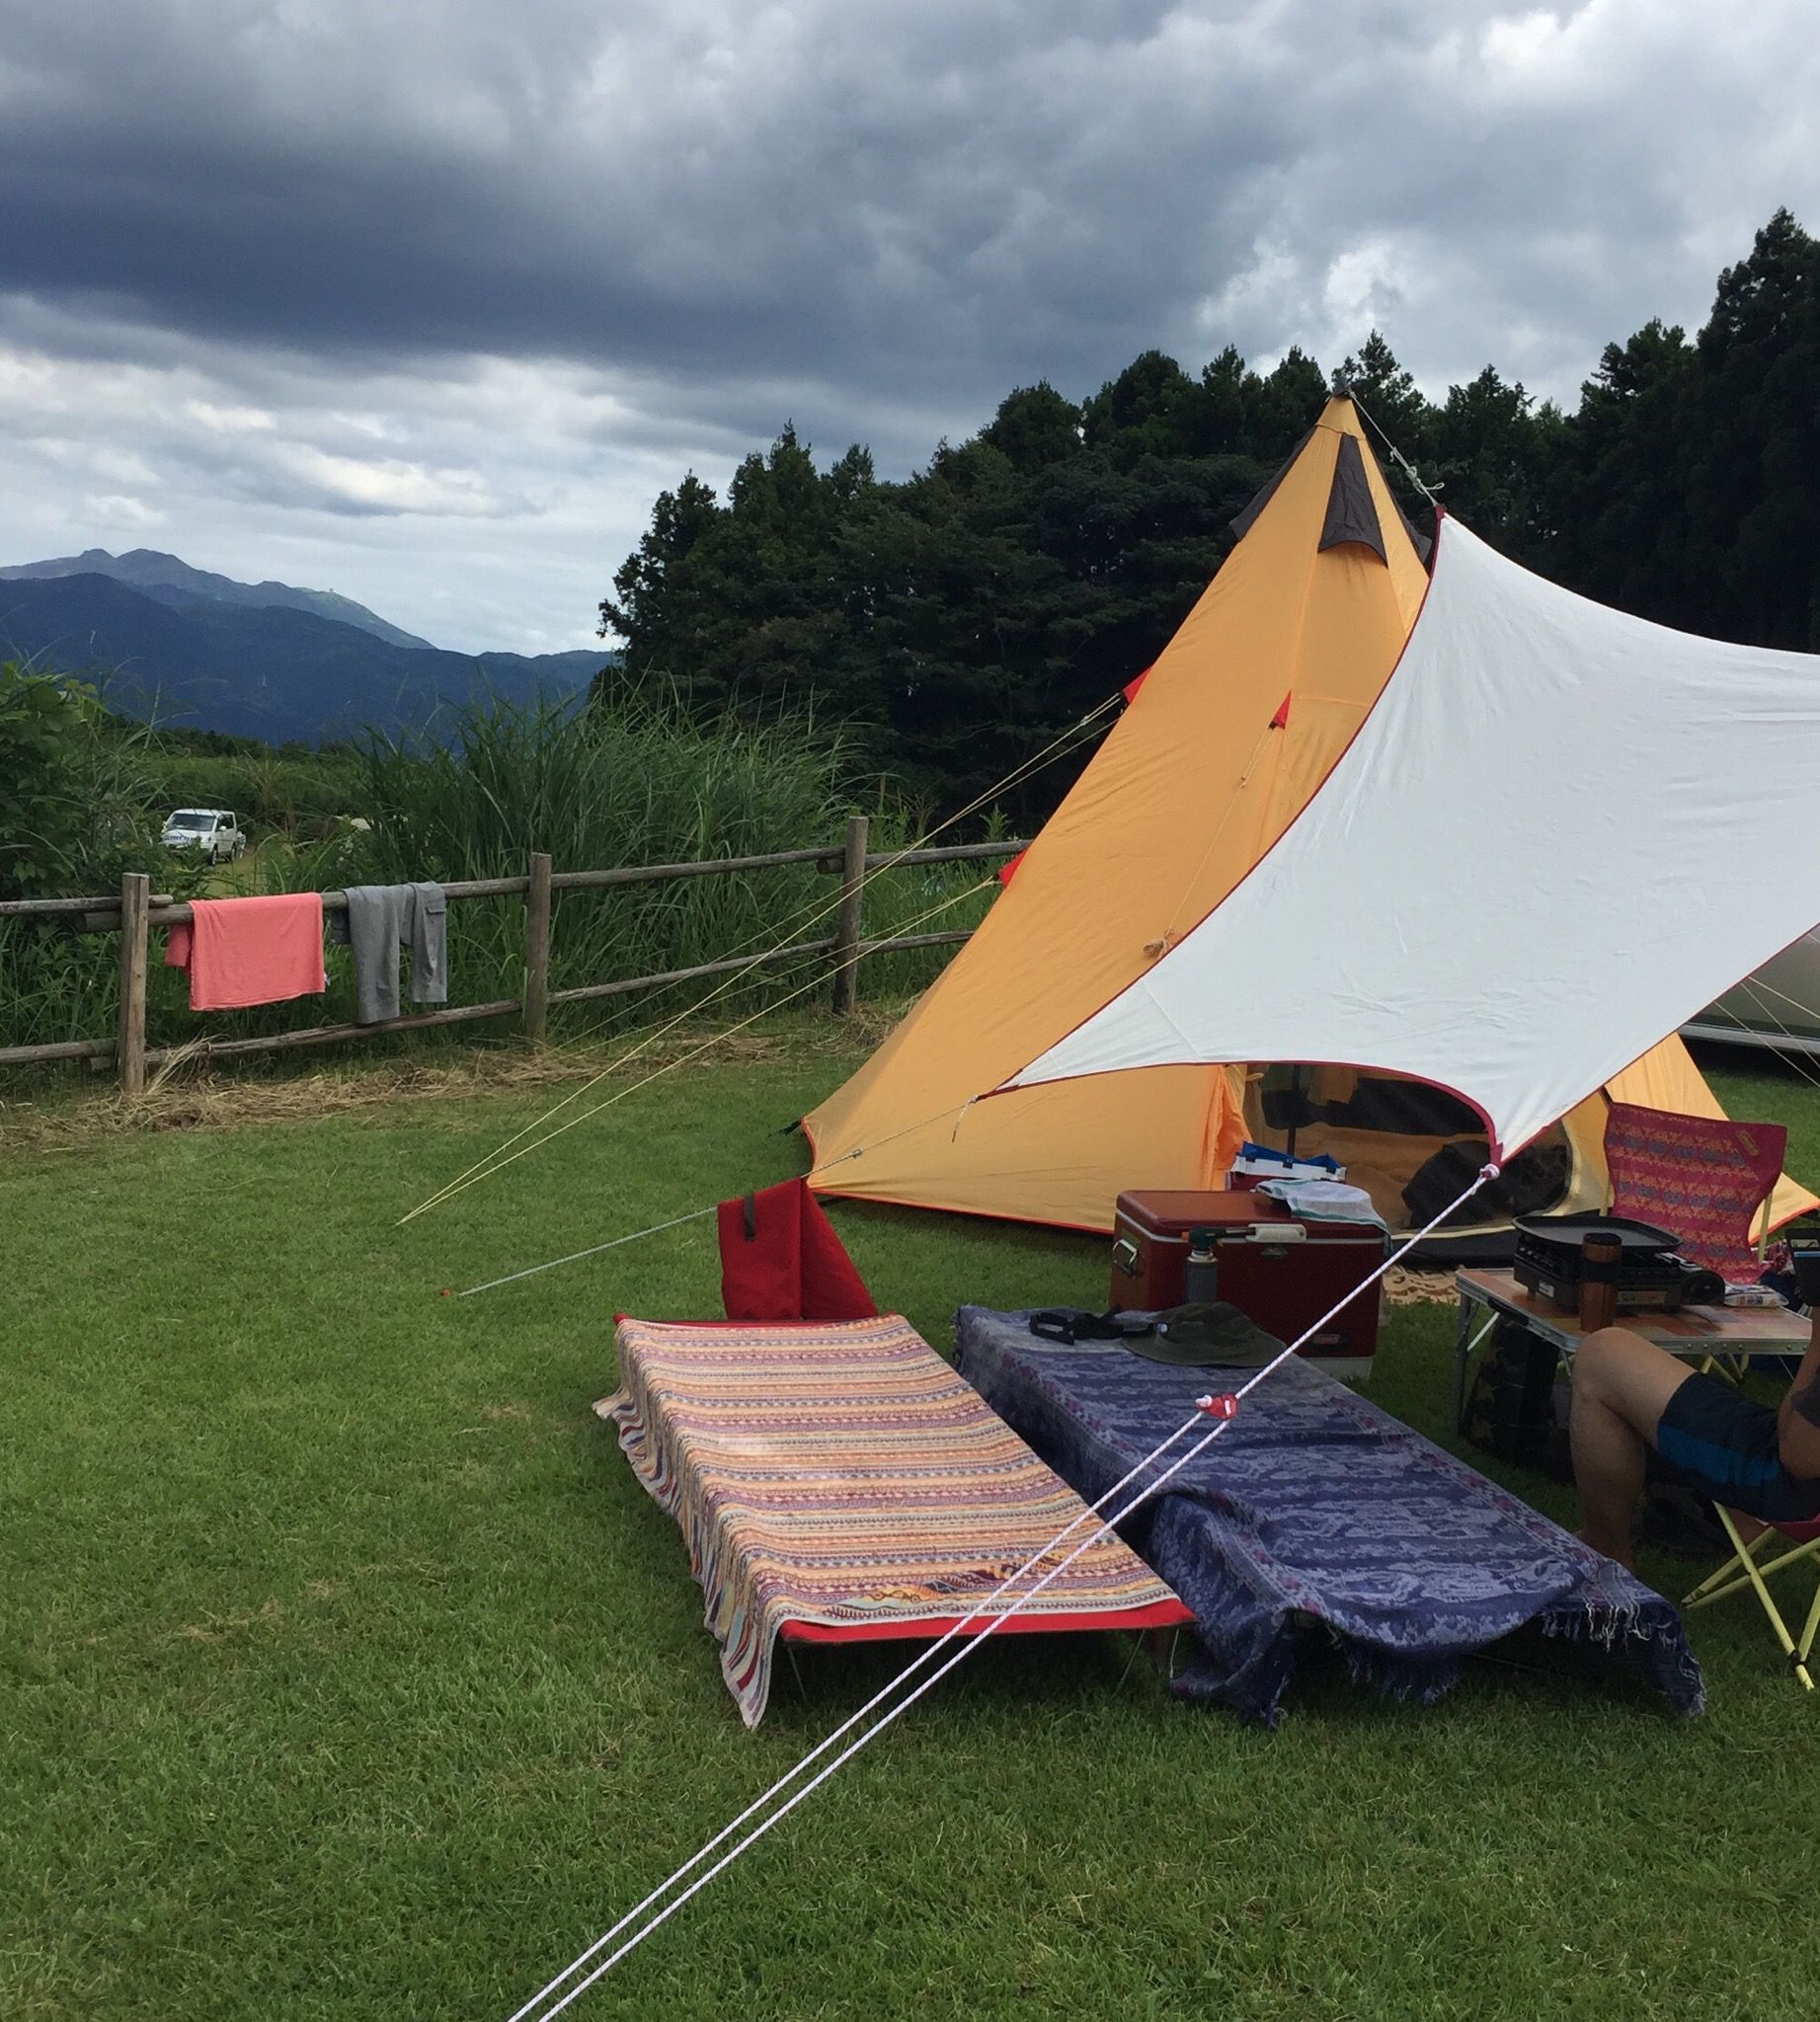 6年ぶりキャンプ 夫婦キャンプ始めました 楽天で購入したキャンプ用具も 食べ盛り男子のお弁当 と 私のすきなもの 楽天ブログ